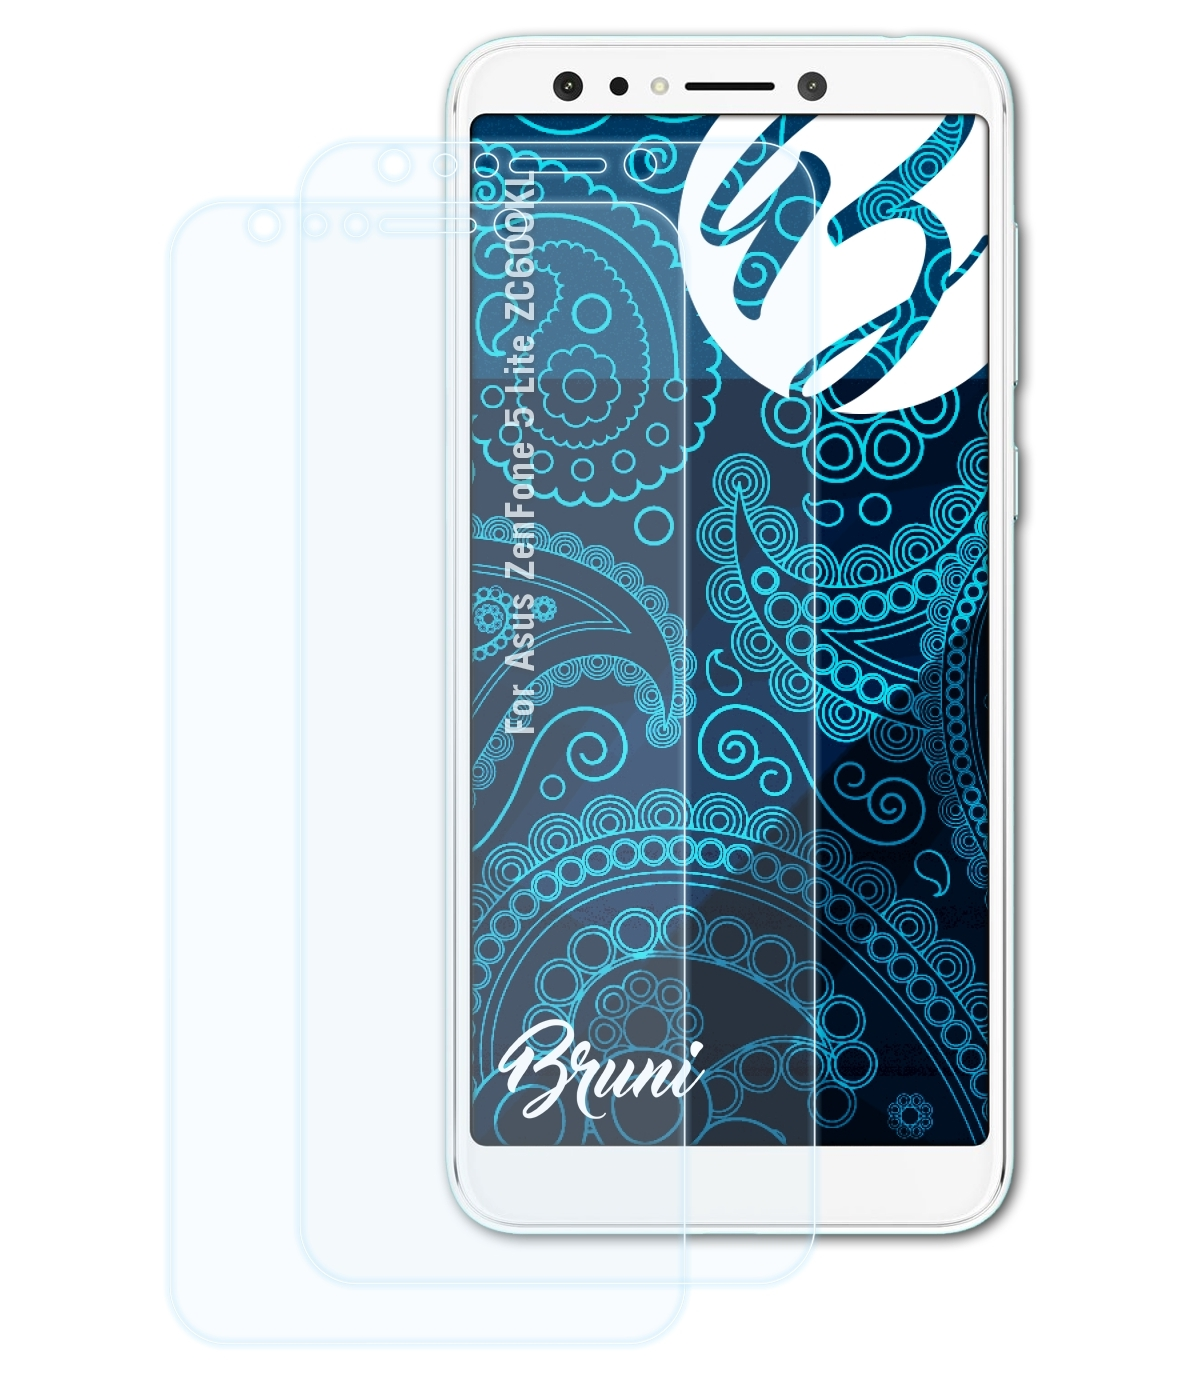 BRUNI 2x Basics-Clear Schutzfolie(für Asus ZenFone 5 Lite (ZC600KL))